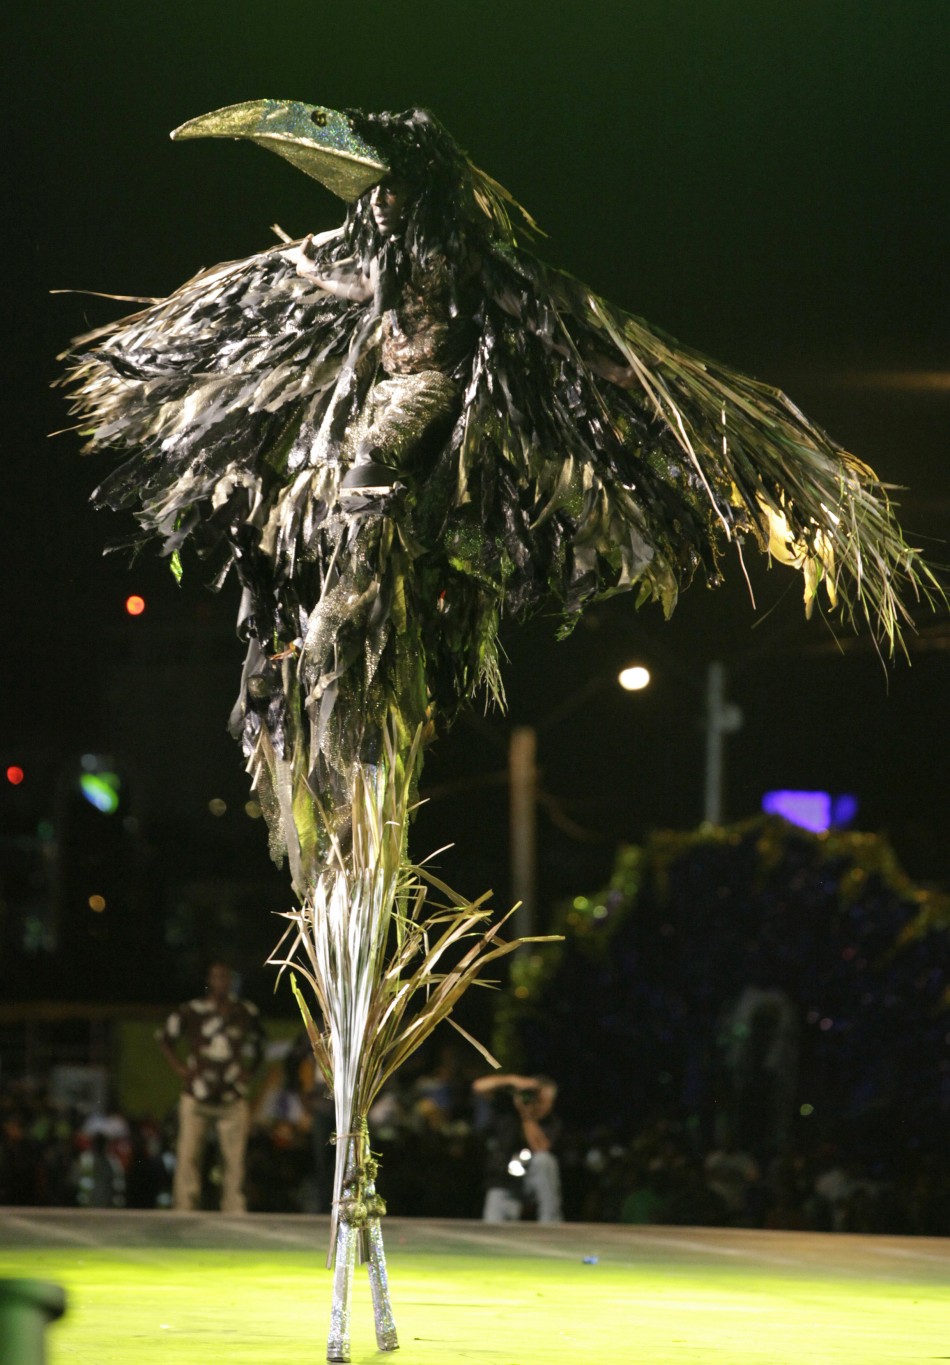 Trinidad and Tobago Carnival 2012